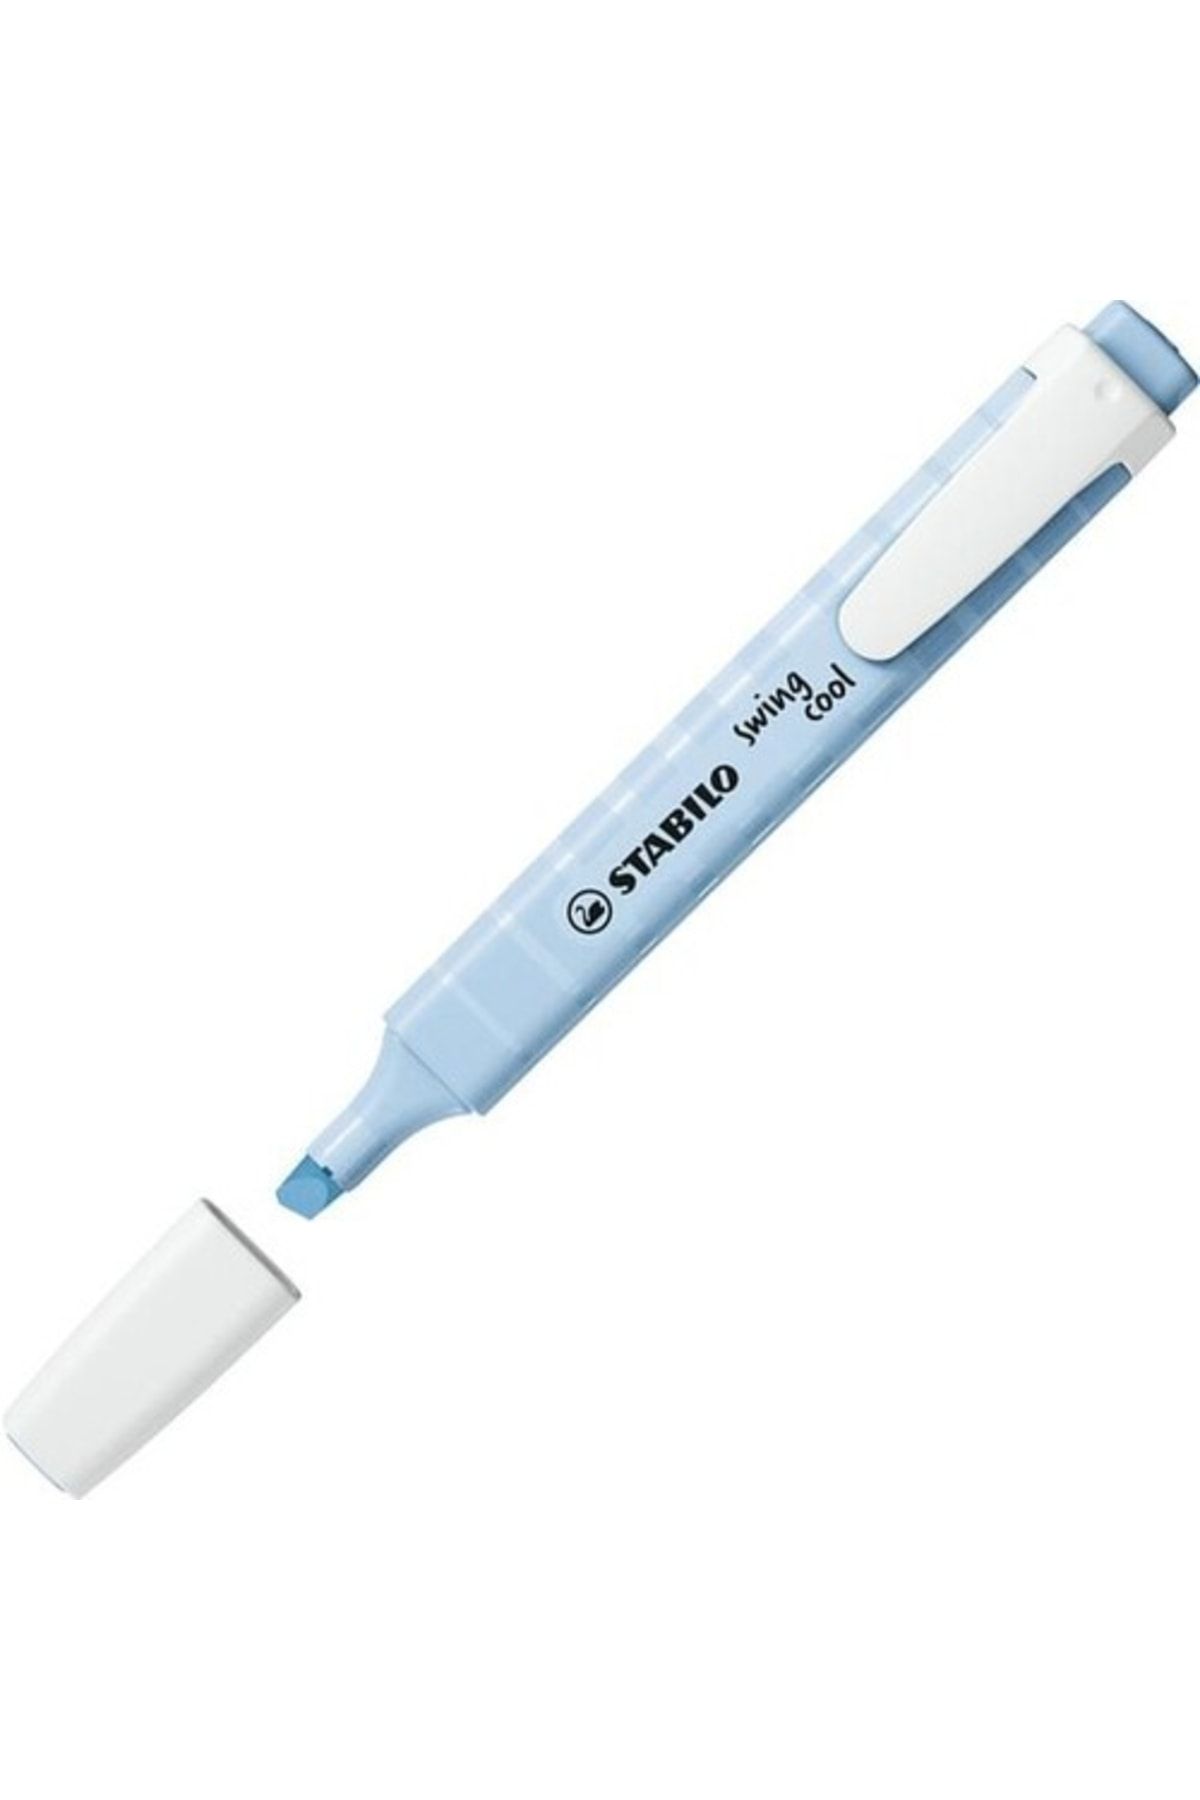 Stabilo Fosforlu Kalem (işaret Kalemi) Swing Cool 1-4 Mm Kesik Uç Pastel Esintili Mavi 275/112-8 (10